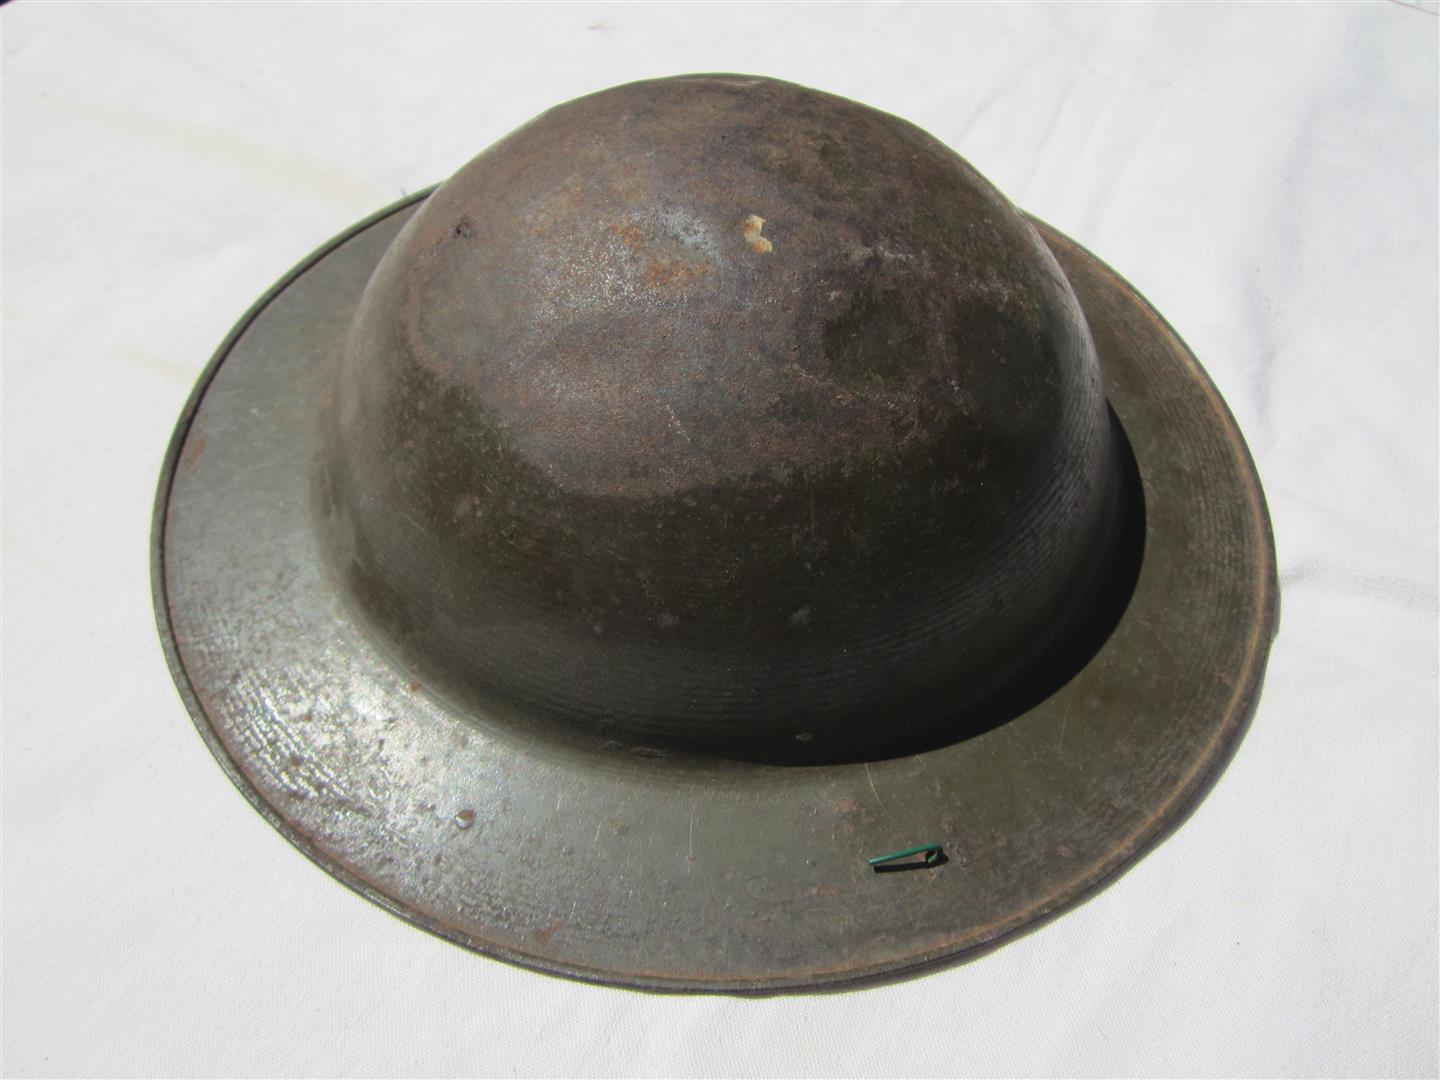 WW2 British Child's Toy Helmet